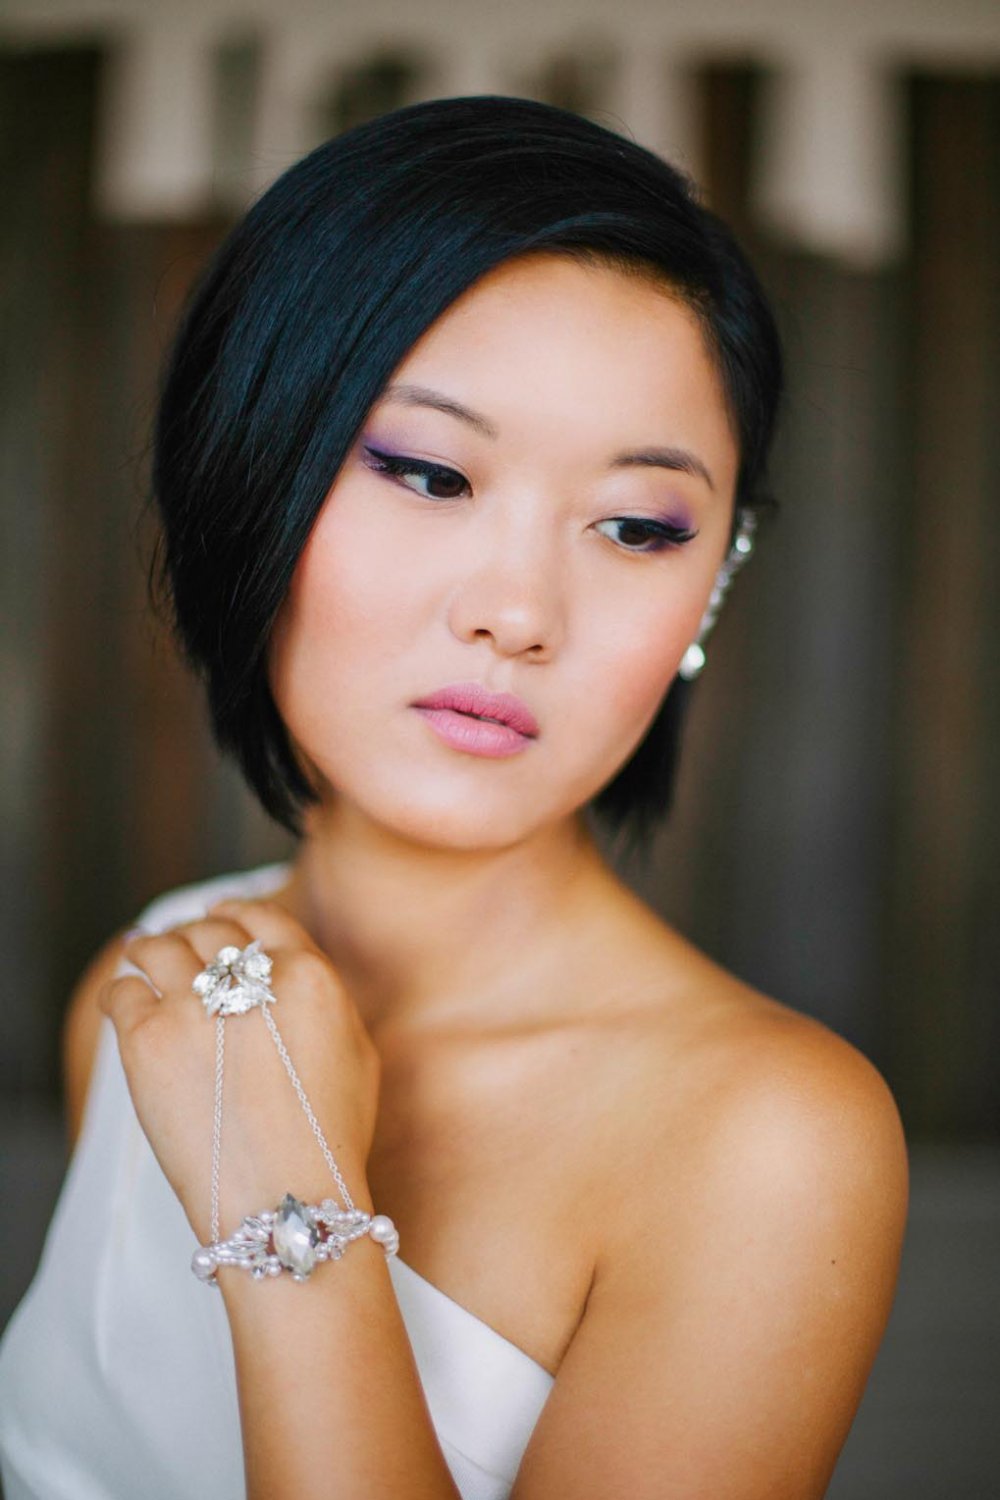 Макияж для азиатского типа внешности с фиолетовыми цветовыми акцентами